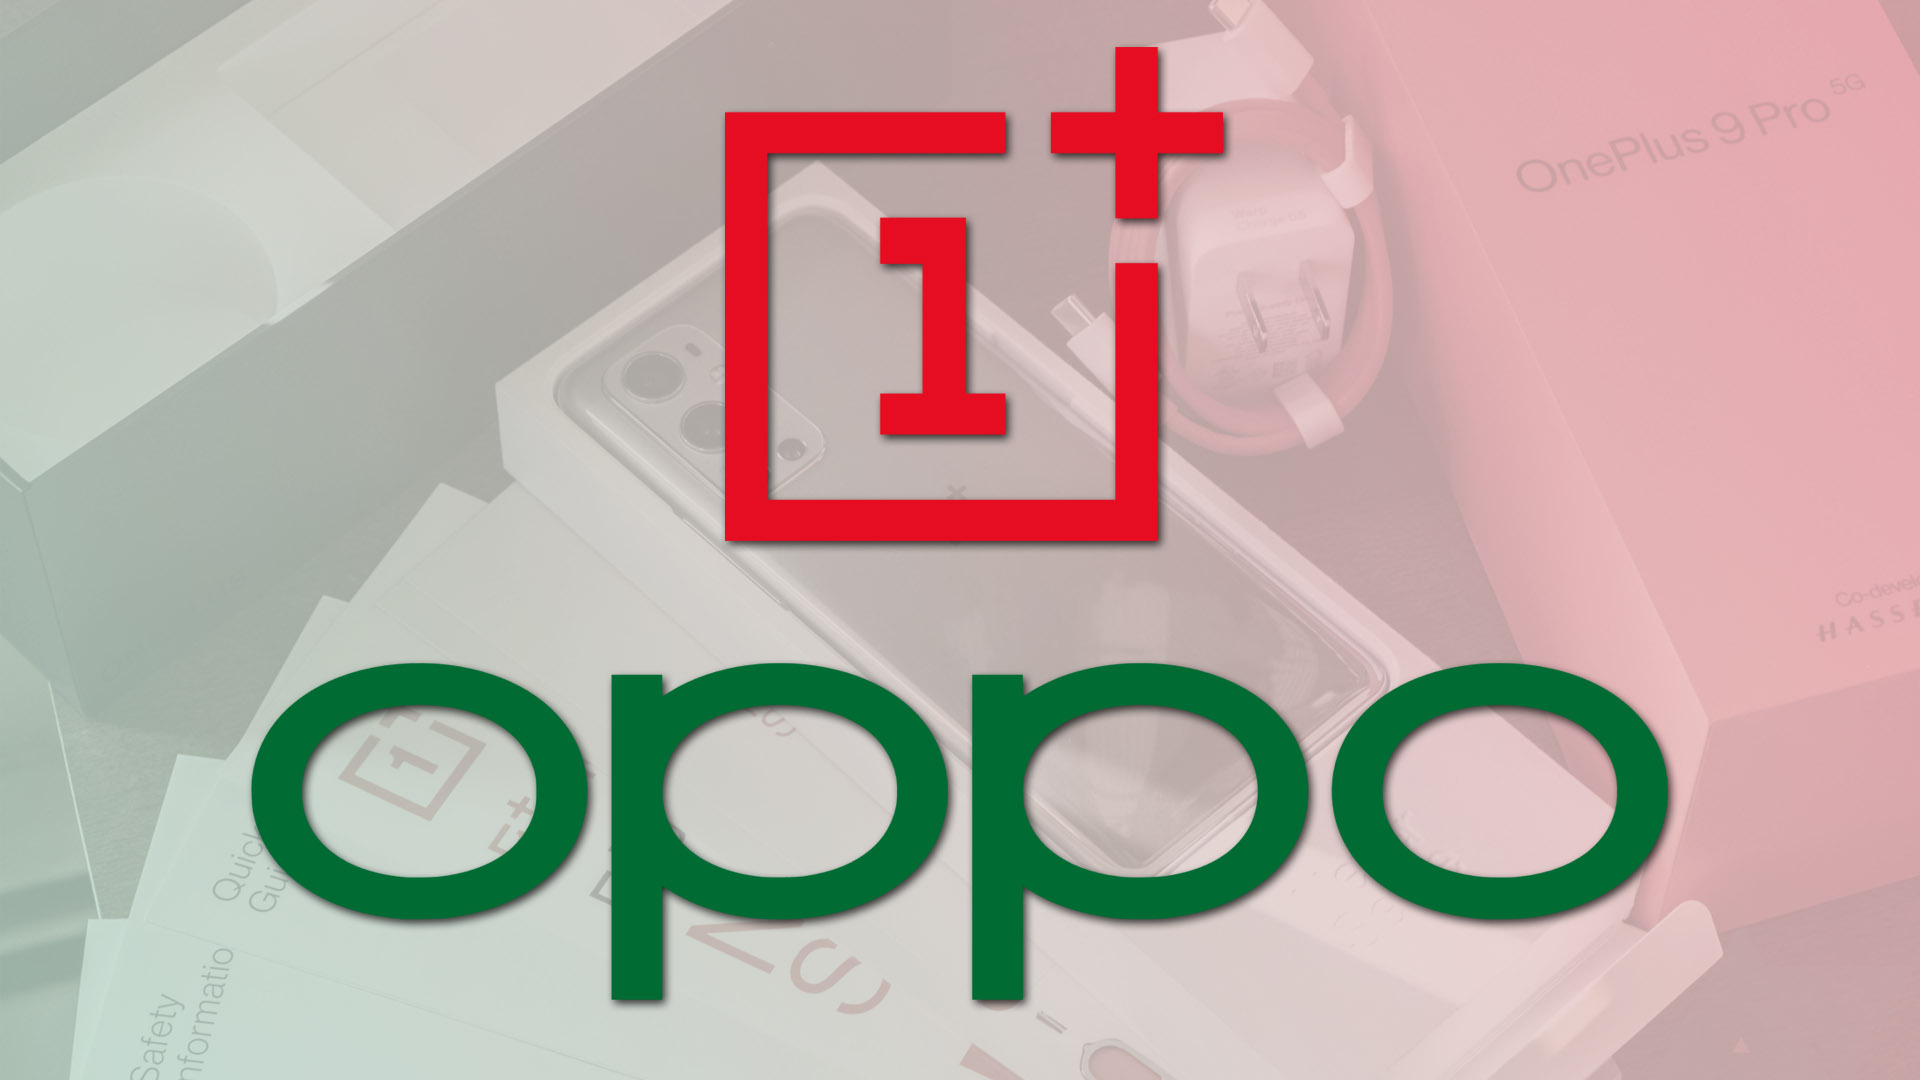 الإعلان الرسمي عن الاندماج الكامل بين شركتي Oppo وOnePlus